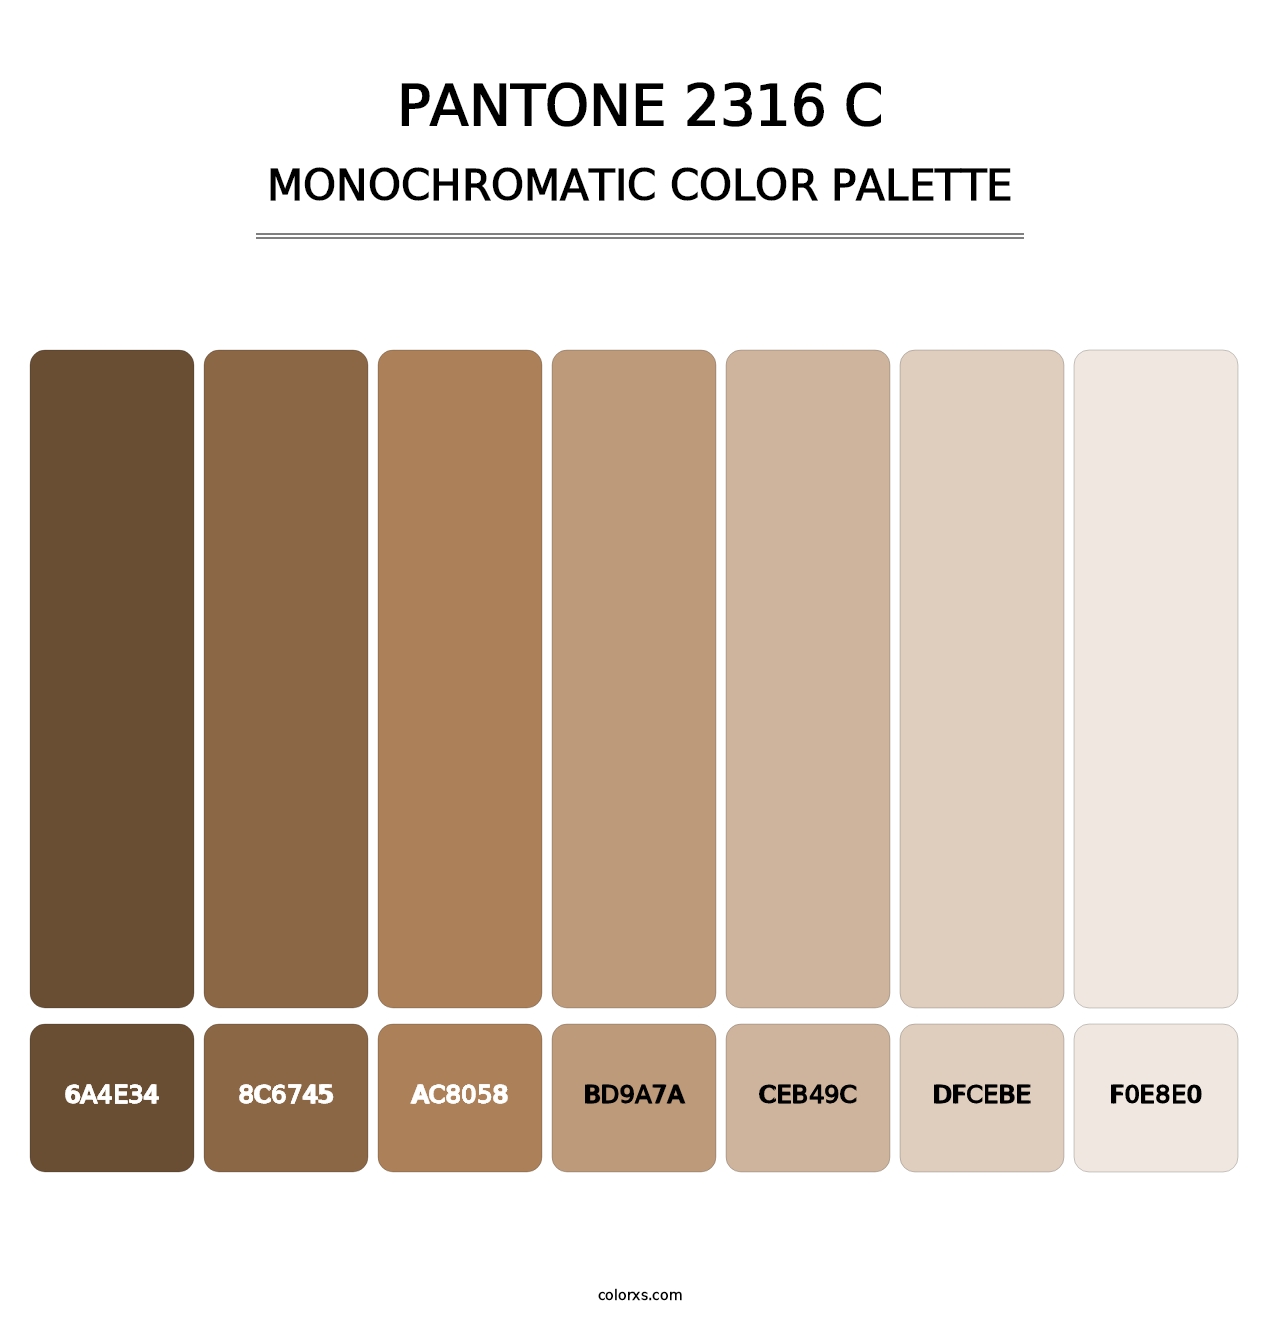 PANTONE 2316 C - Monochromatic Color Palette